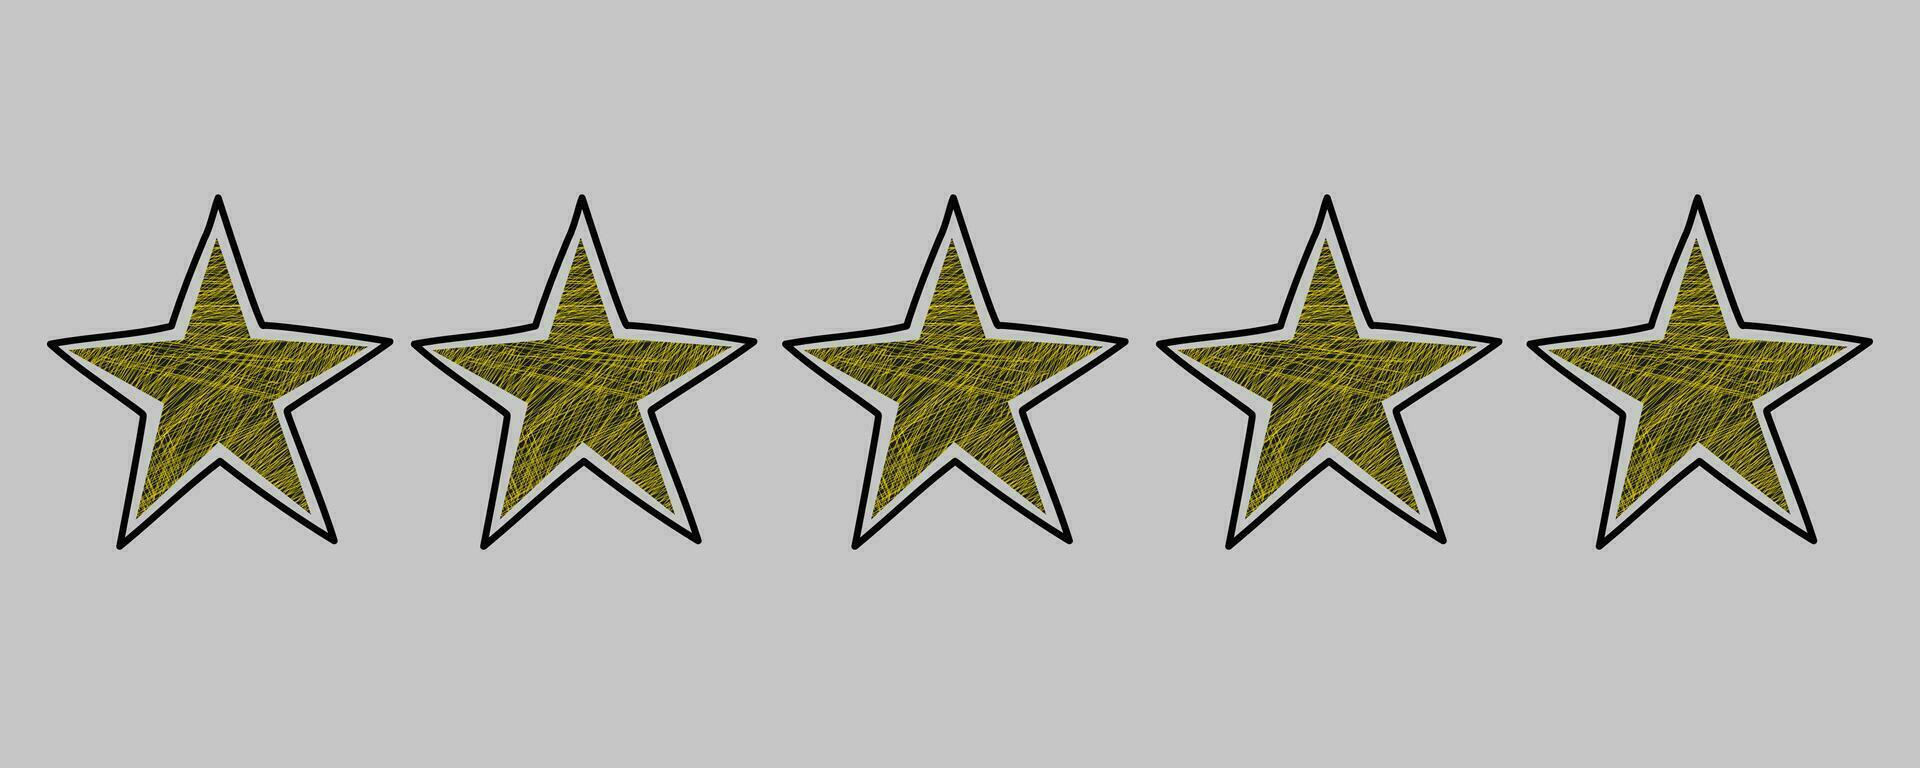 cinco estrella realimentación garabatear. bosquejo grunge estilo. aislado vector ilustración